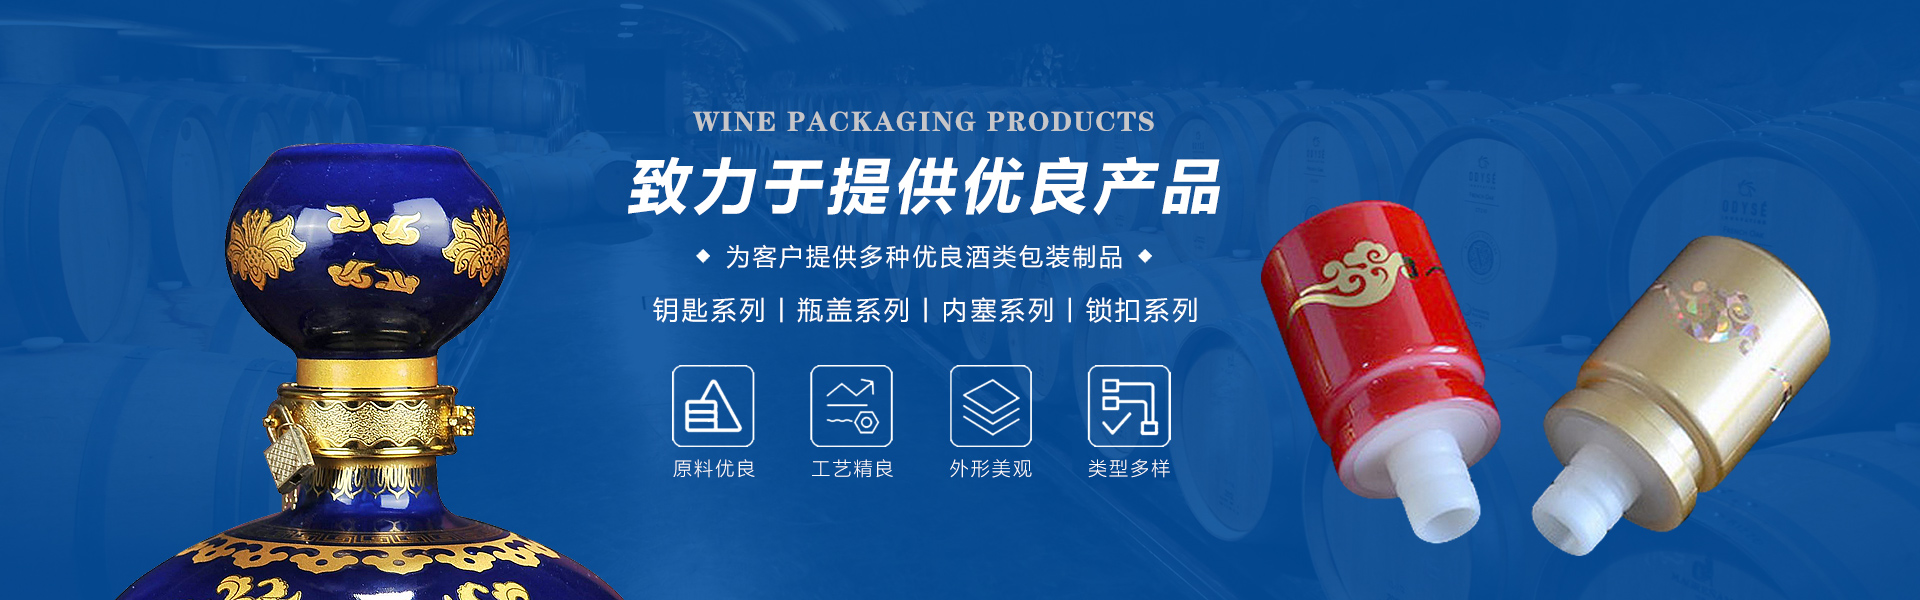 青州市三星酒类包装制品有限公司